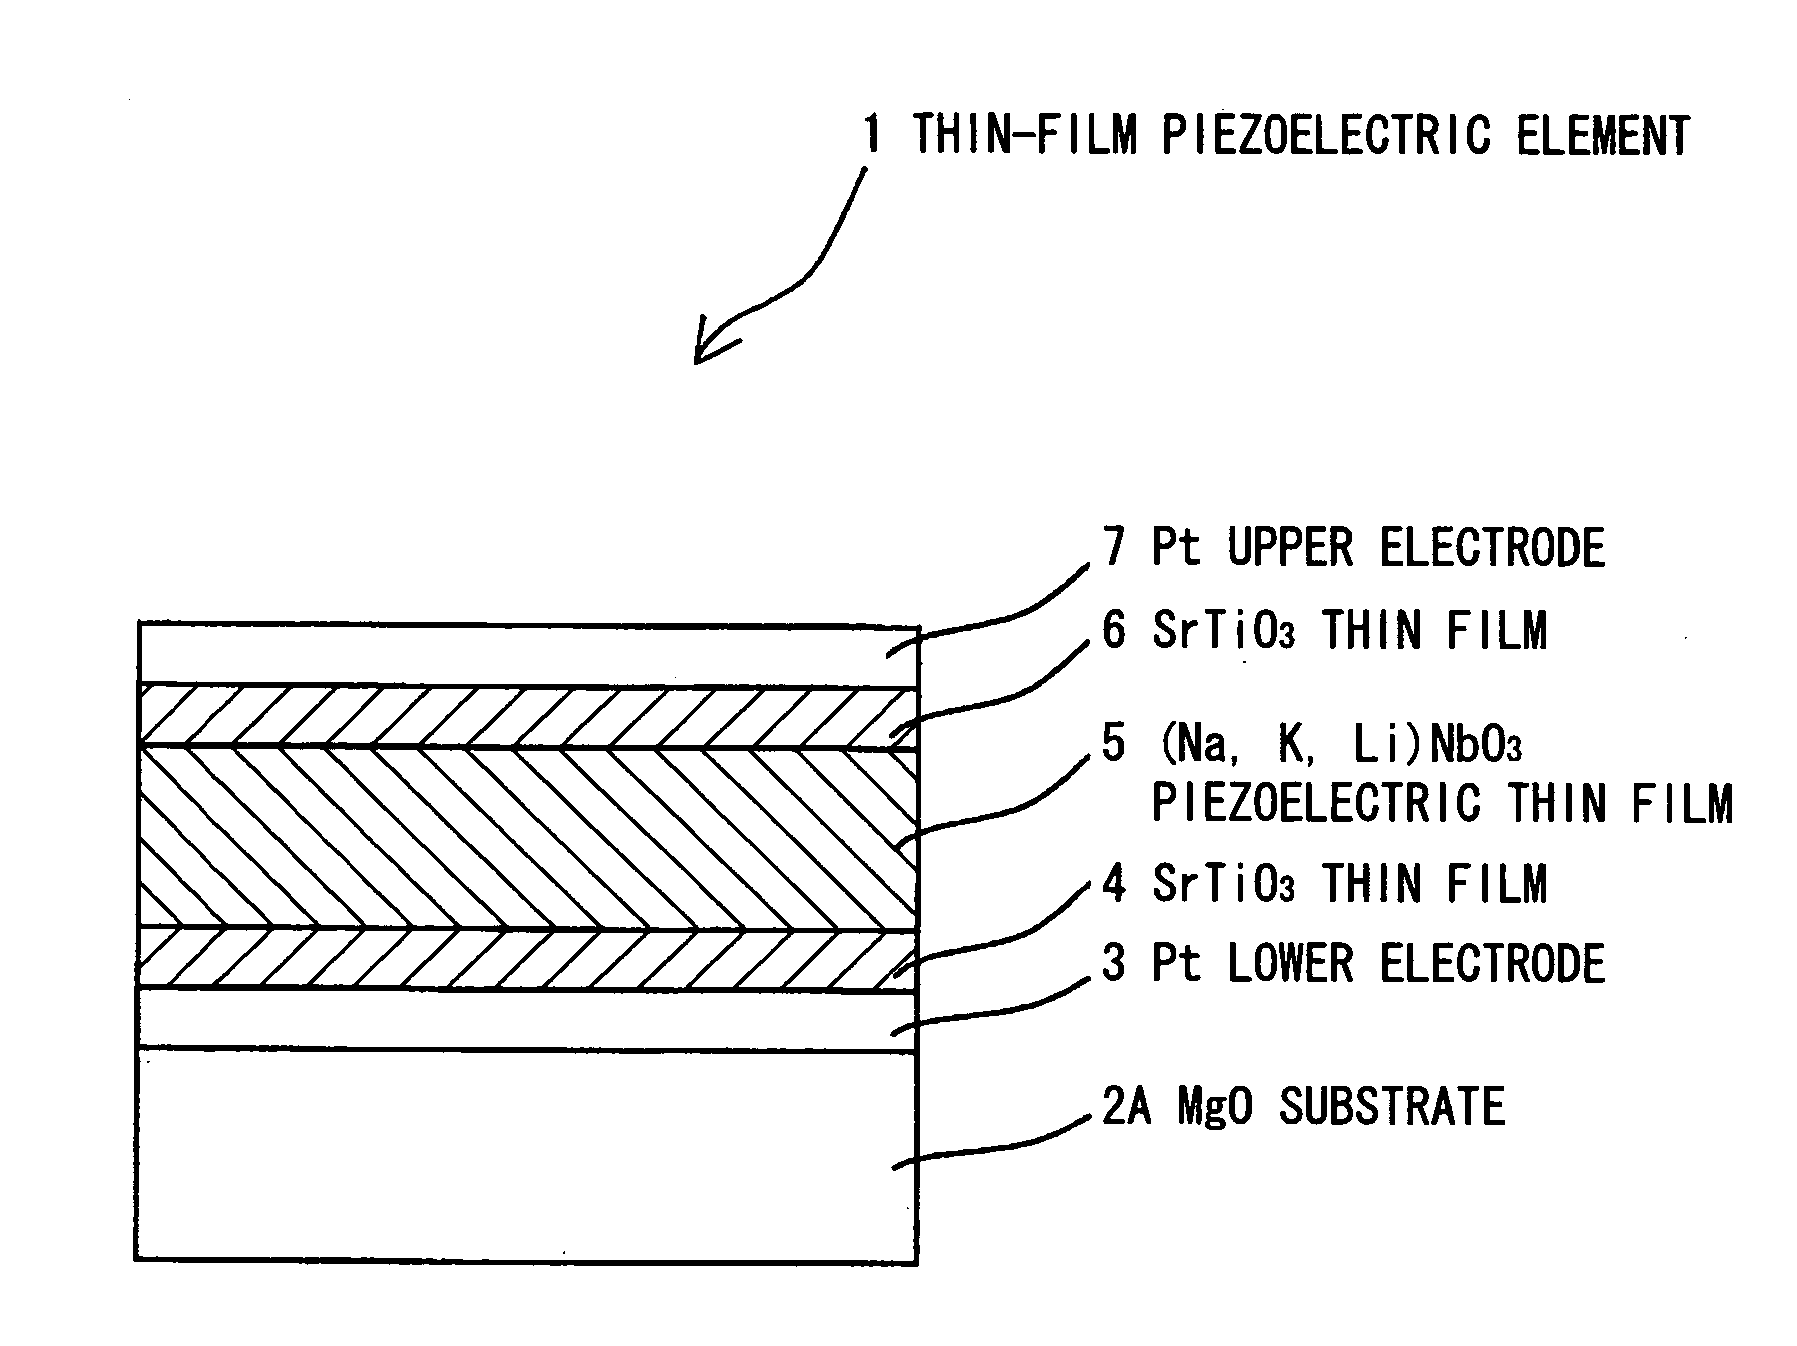 Piezoelectric thin film element